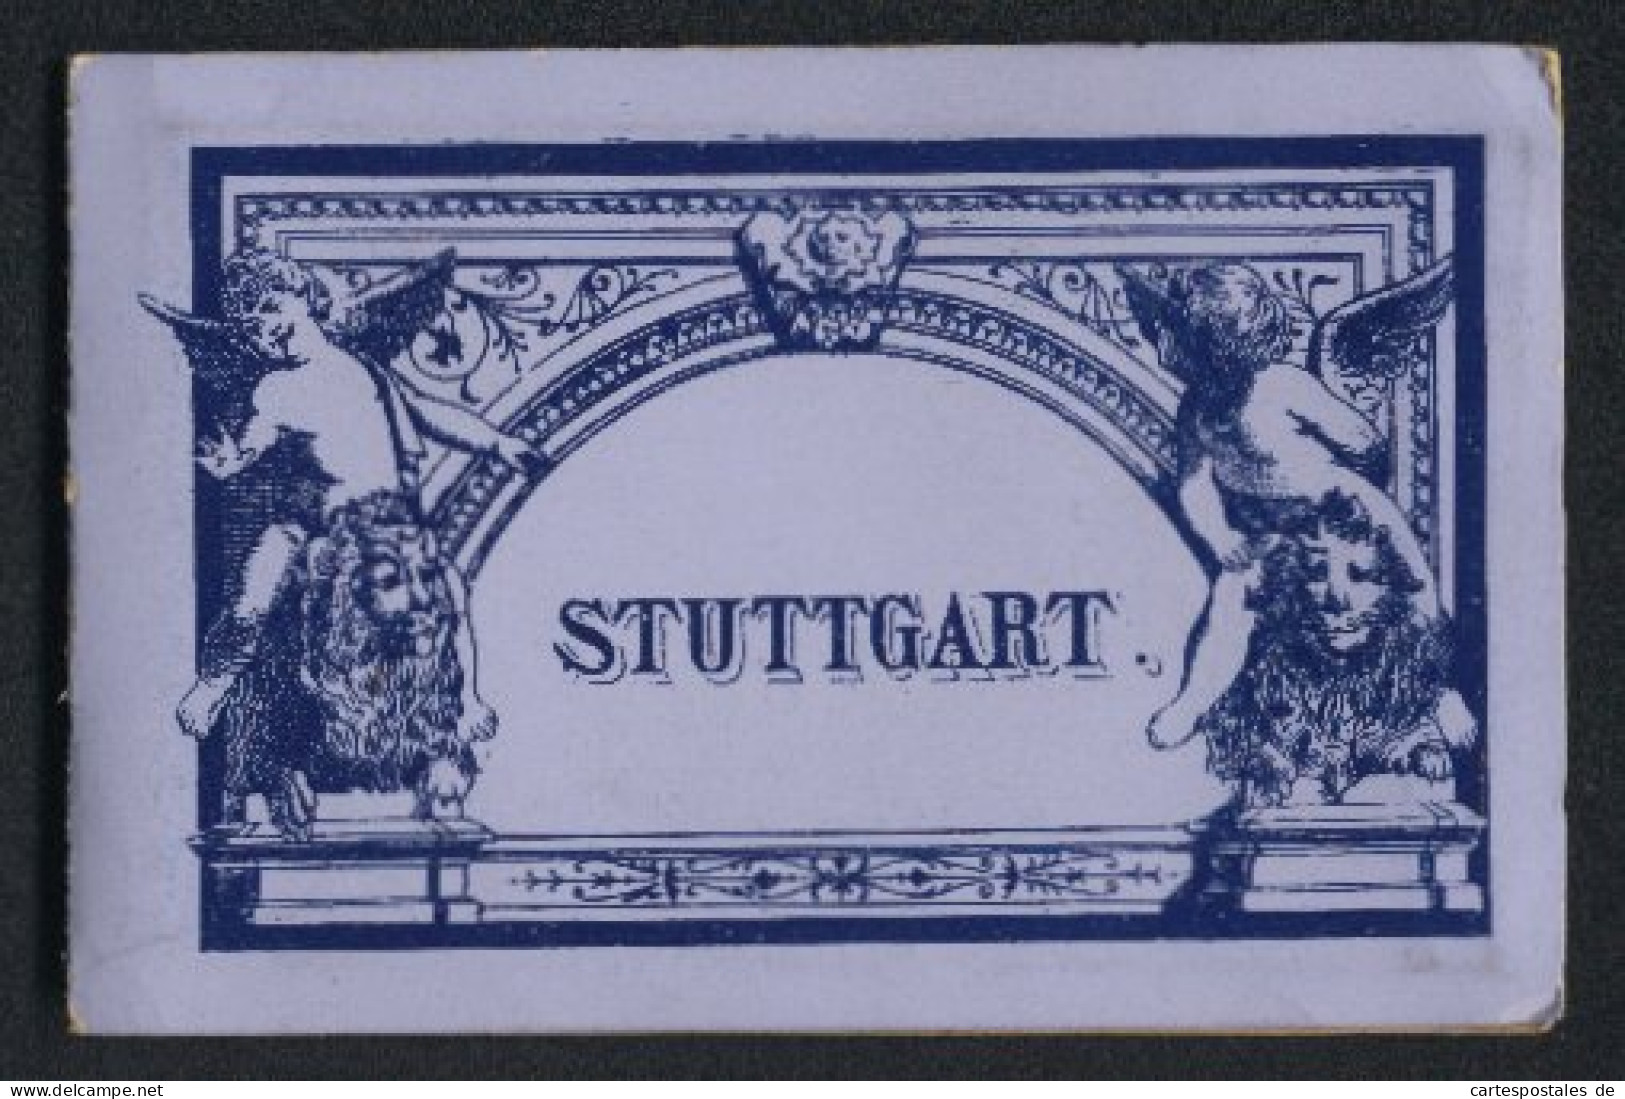 Leporello-Album Stuttgart Mit 12 Lithographie-Ansichten, Gewerbehalle, Politechnikum, Wilhelma, Marktplatz, Postgebäu  - Lithographies